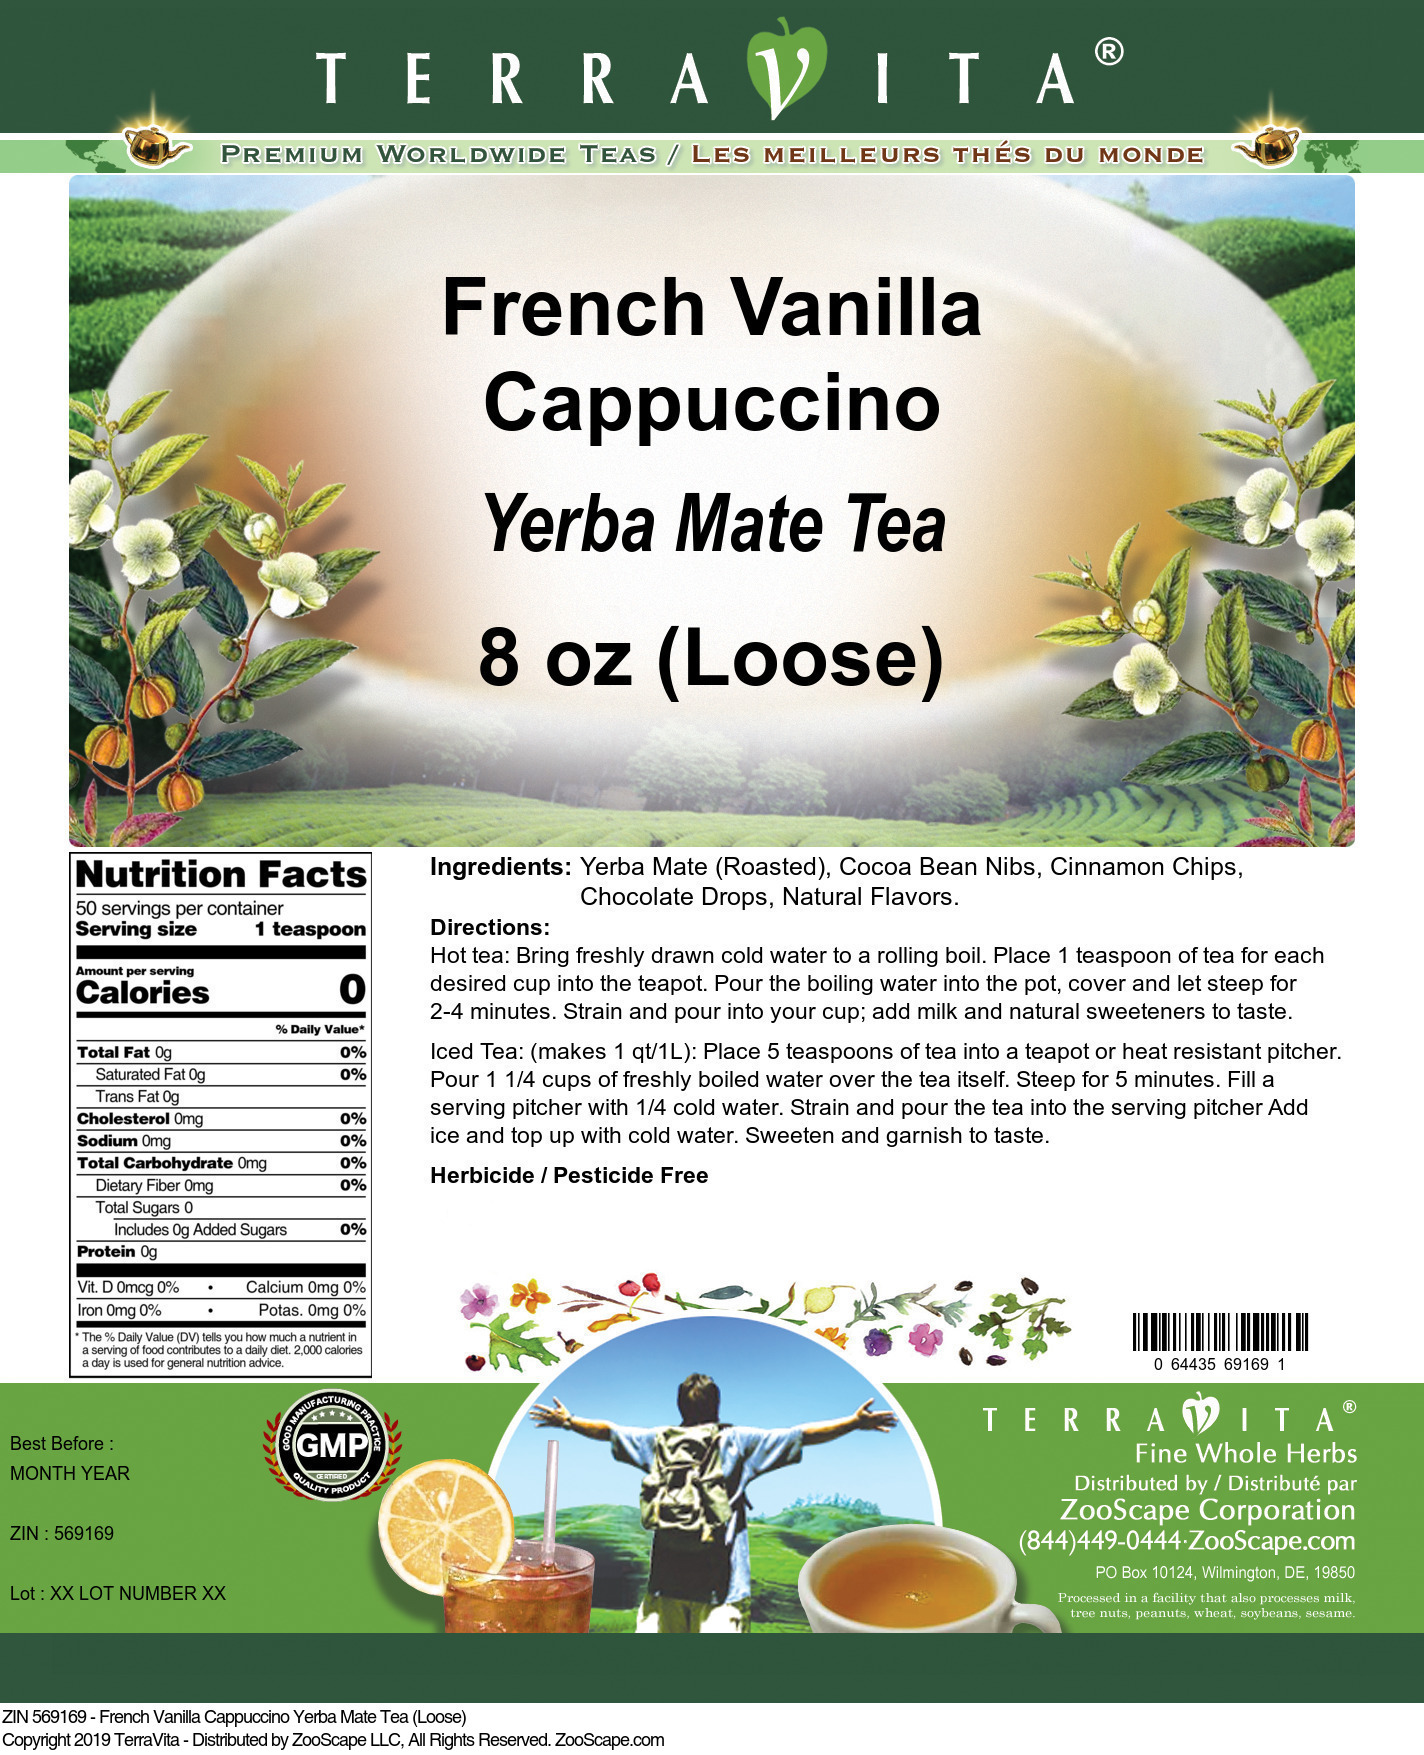 French Vanilla Cappuccino Yerba Mate Tea (Loose) - Label